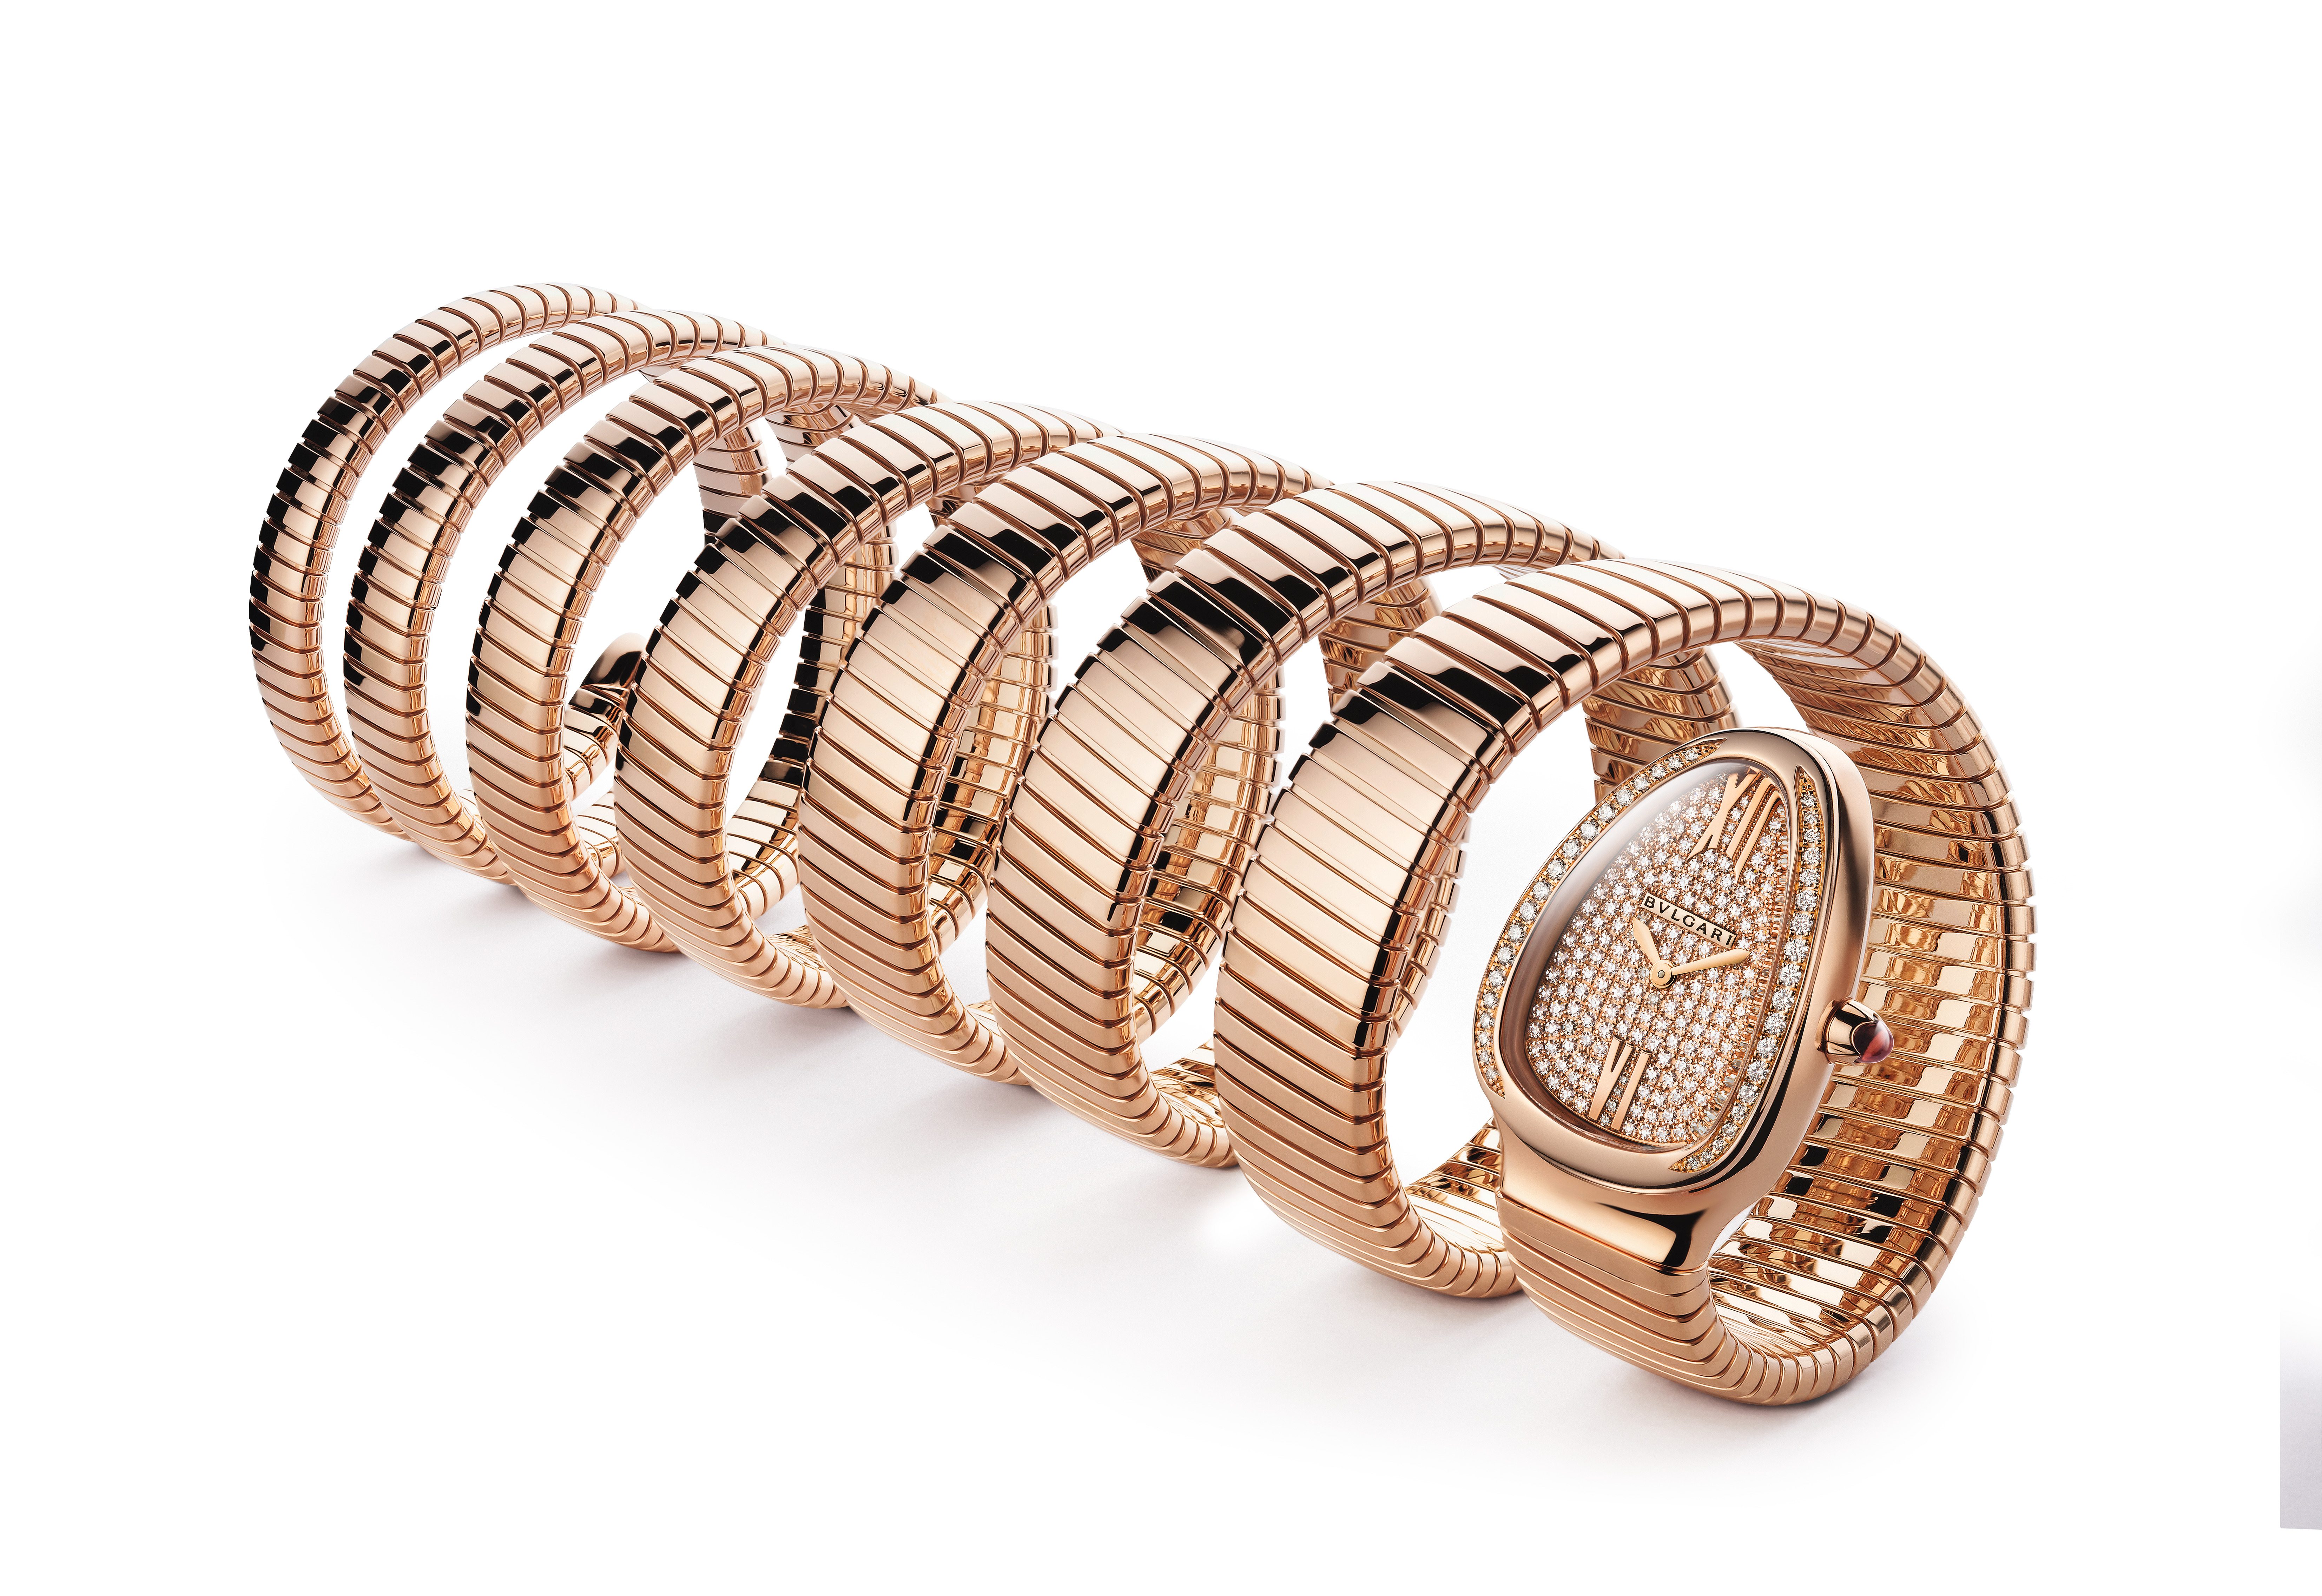 Le bracelet-montre Serpenti Tubogas à sept tourbillons de Bulgari, en or rose 18 carats et diamants.